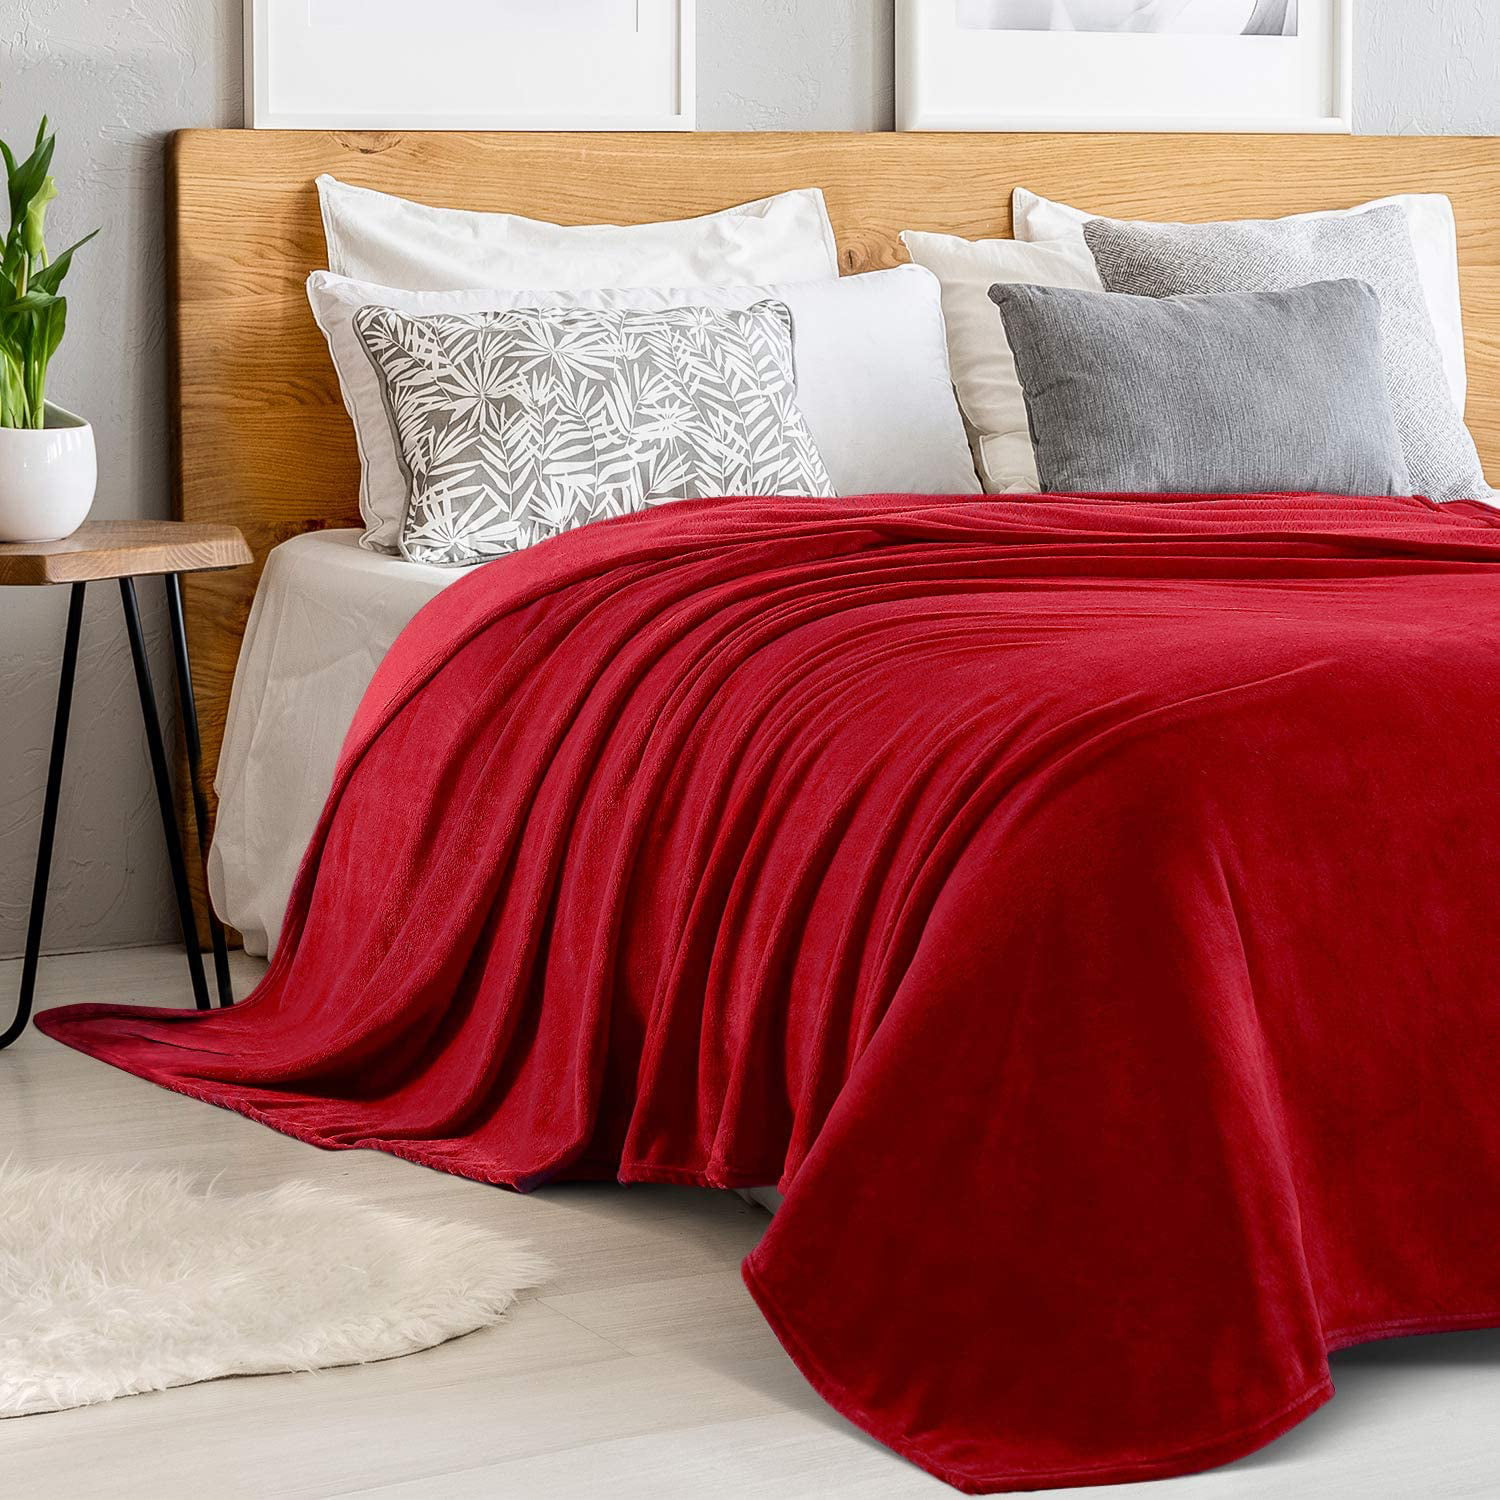 Sedona House Flannel Teal Fleece Blanket Queen Size 90"x90" 